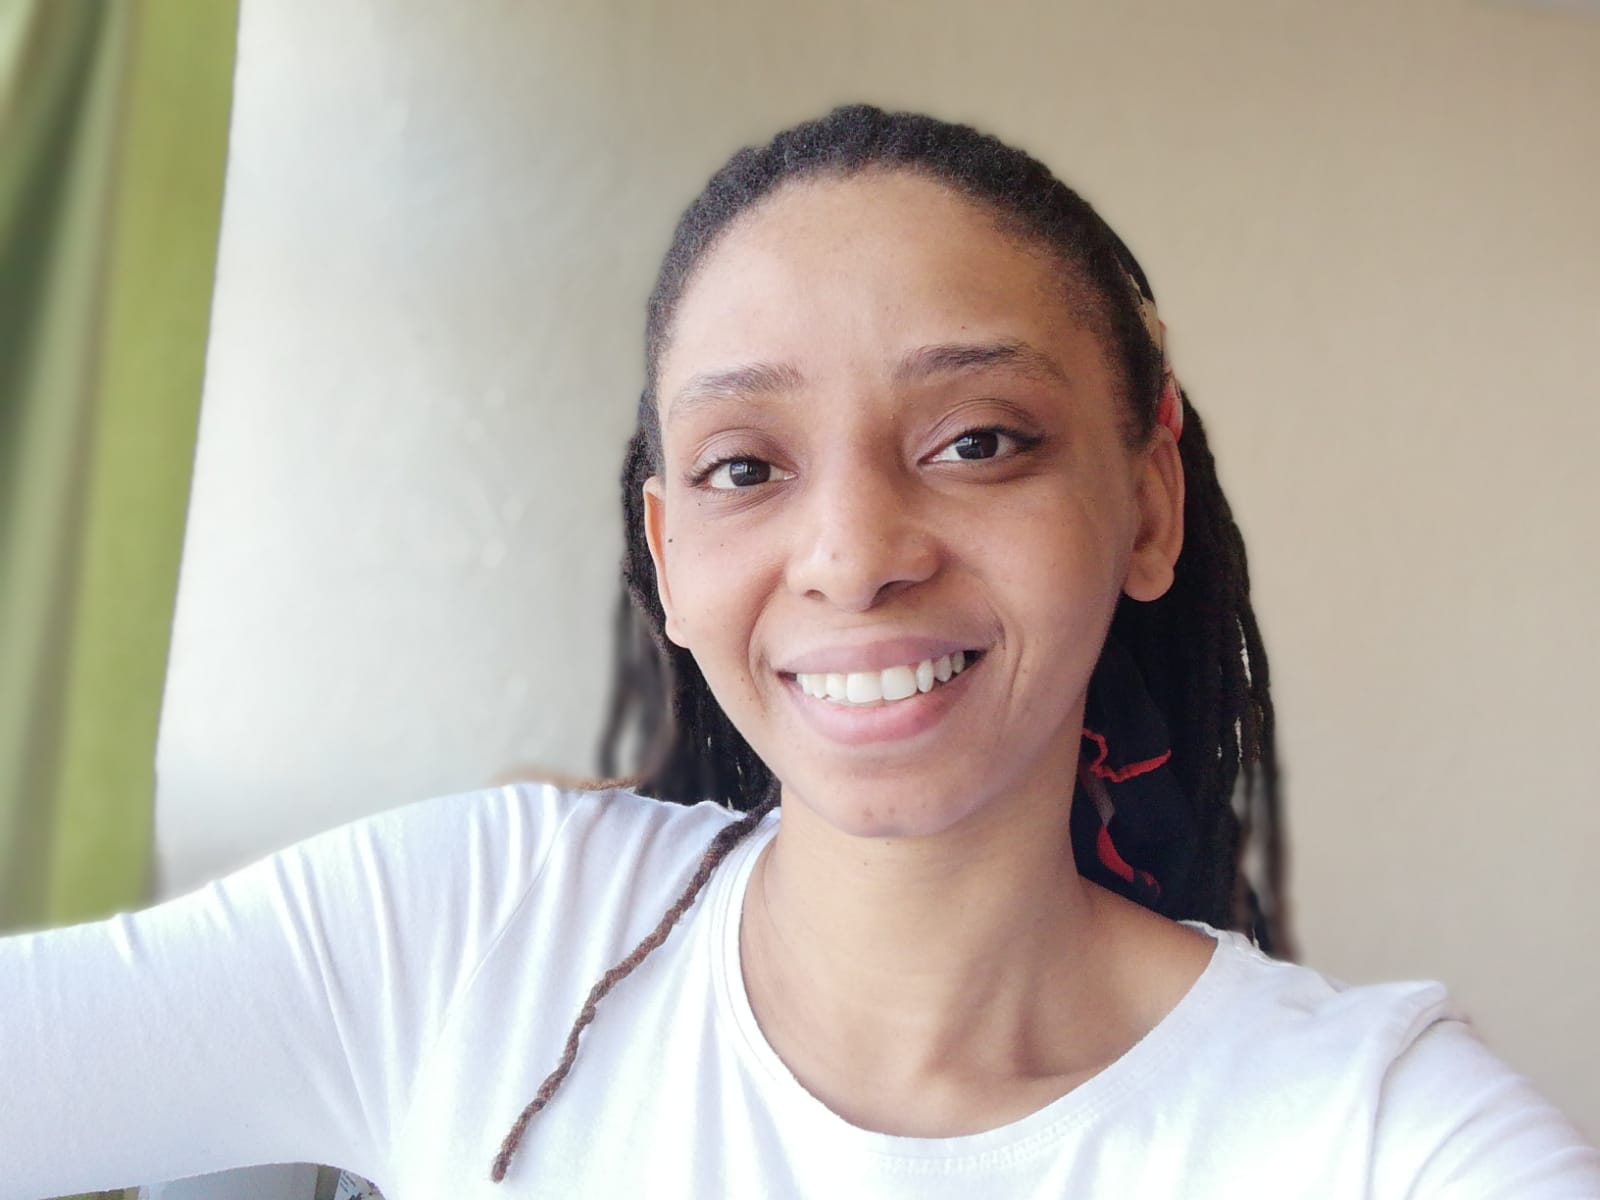     Anaïs : guadeloupéenne confinée au Royaume-Uni 

